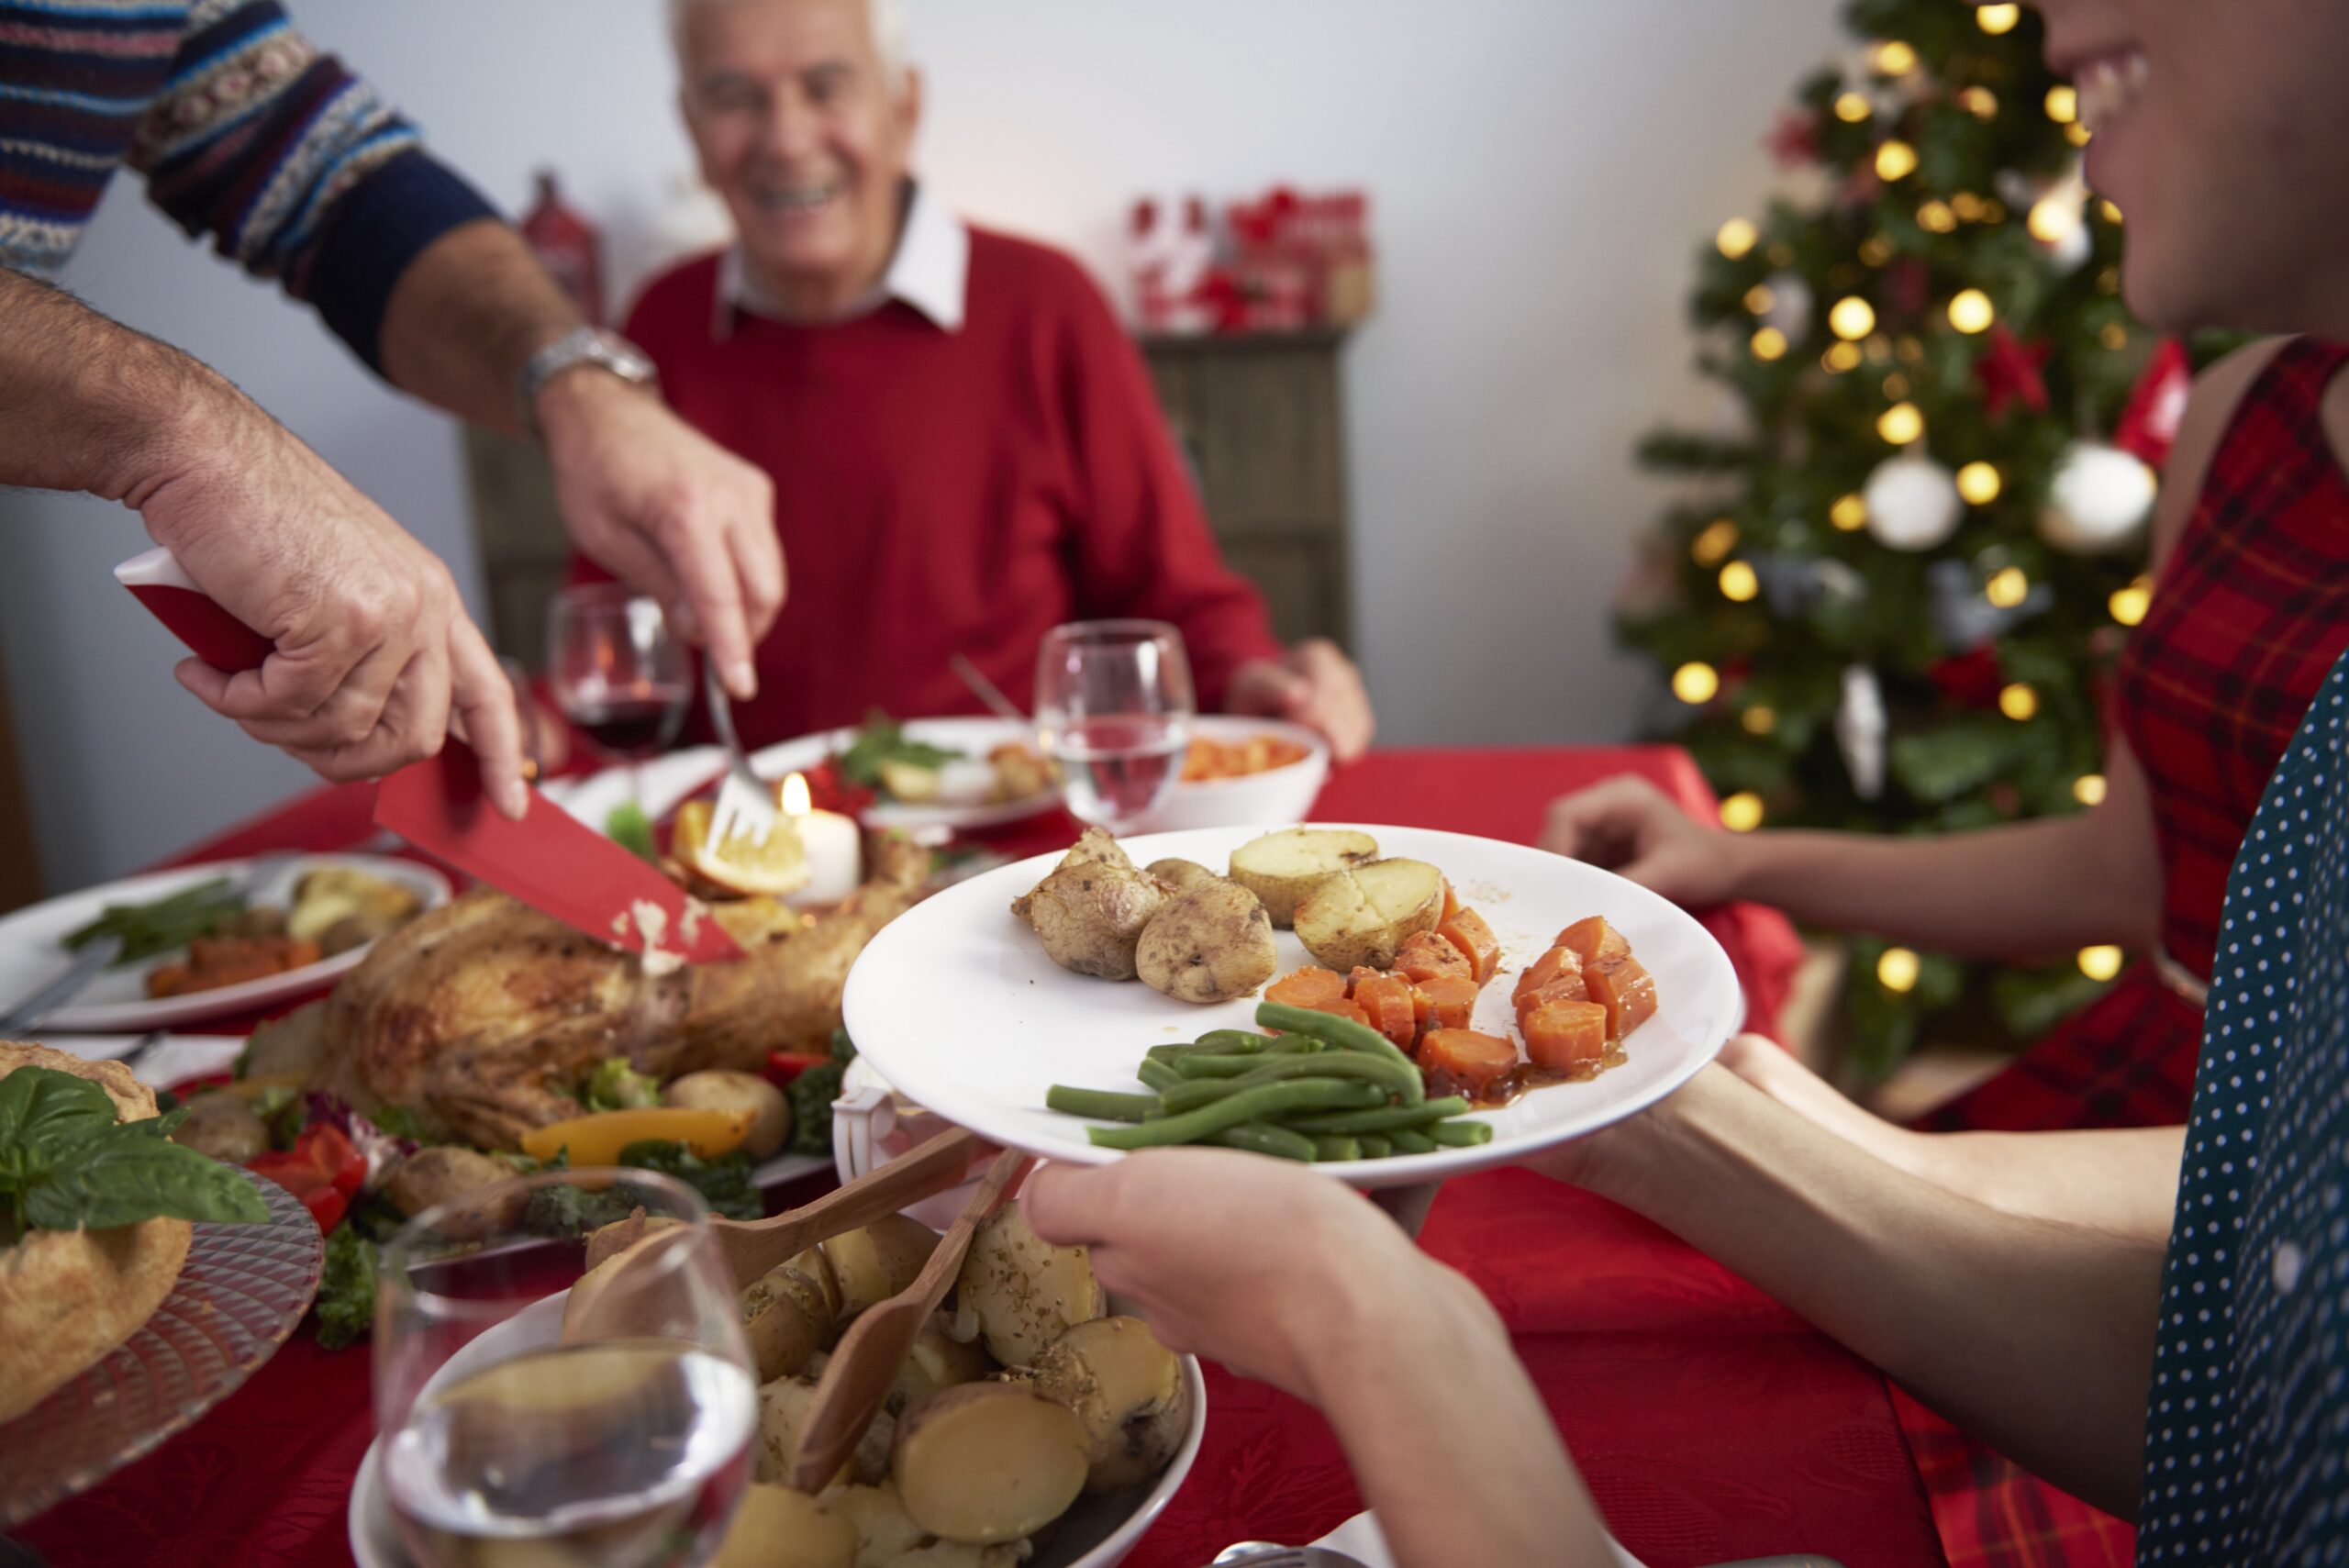 Família reunida em torno de uma mesa de jantar festiva, desfrutando de um banquete natalino. A imagem capta mãos passando um prato de comida, com destaque para um assado dourado, acompanhamentos de batatas, cenouras e vagem. Ao fundo, um idoso sorri, evidenciando a alegria do encontro. A decoração inclui uma toalha de mesa vermelha, velas acesas e um pinheiro de Natal iluminado ao fundo, transmitindo um ambiente acolhedor e festivo.